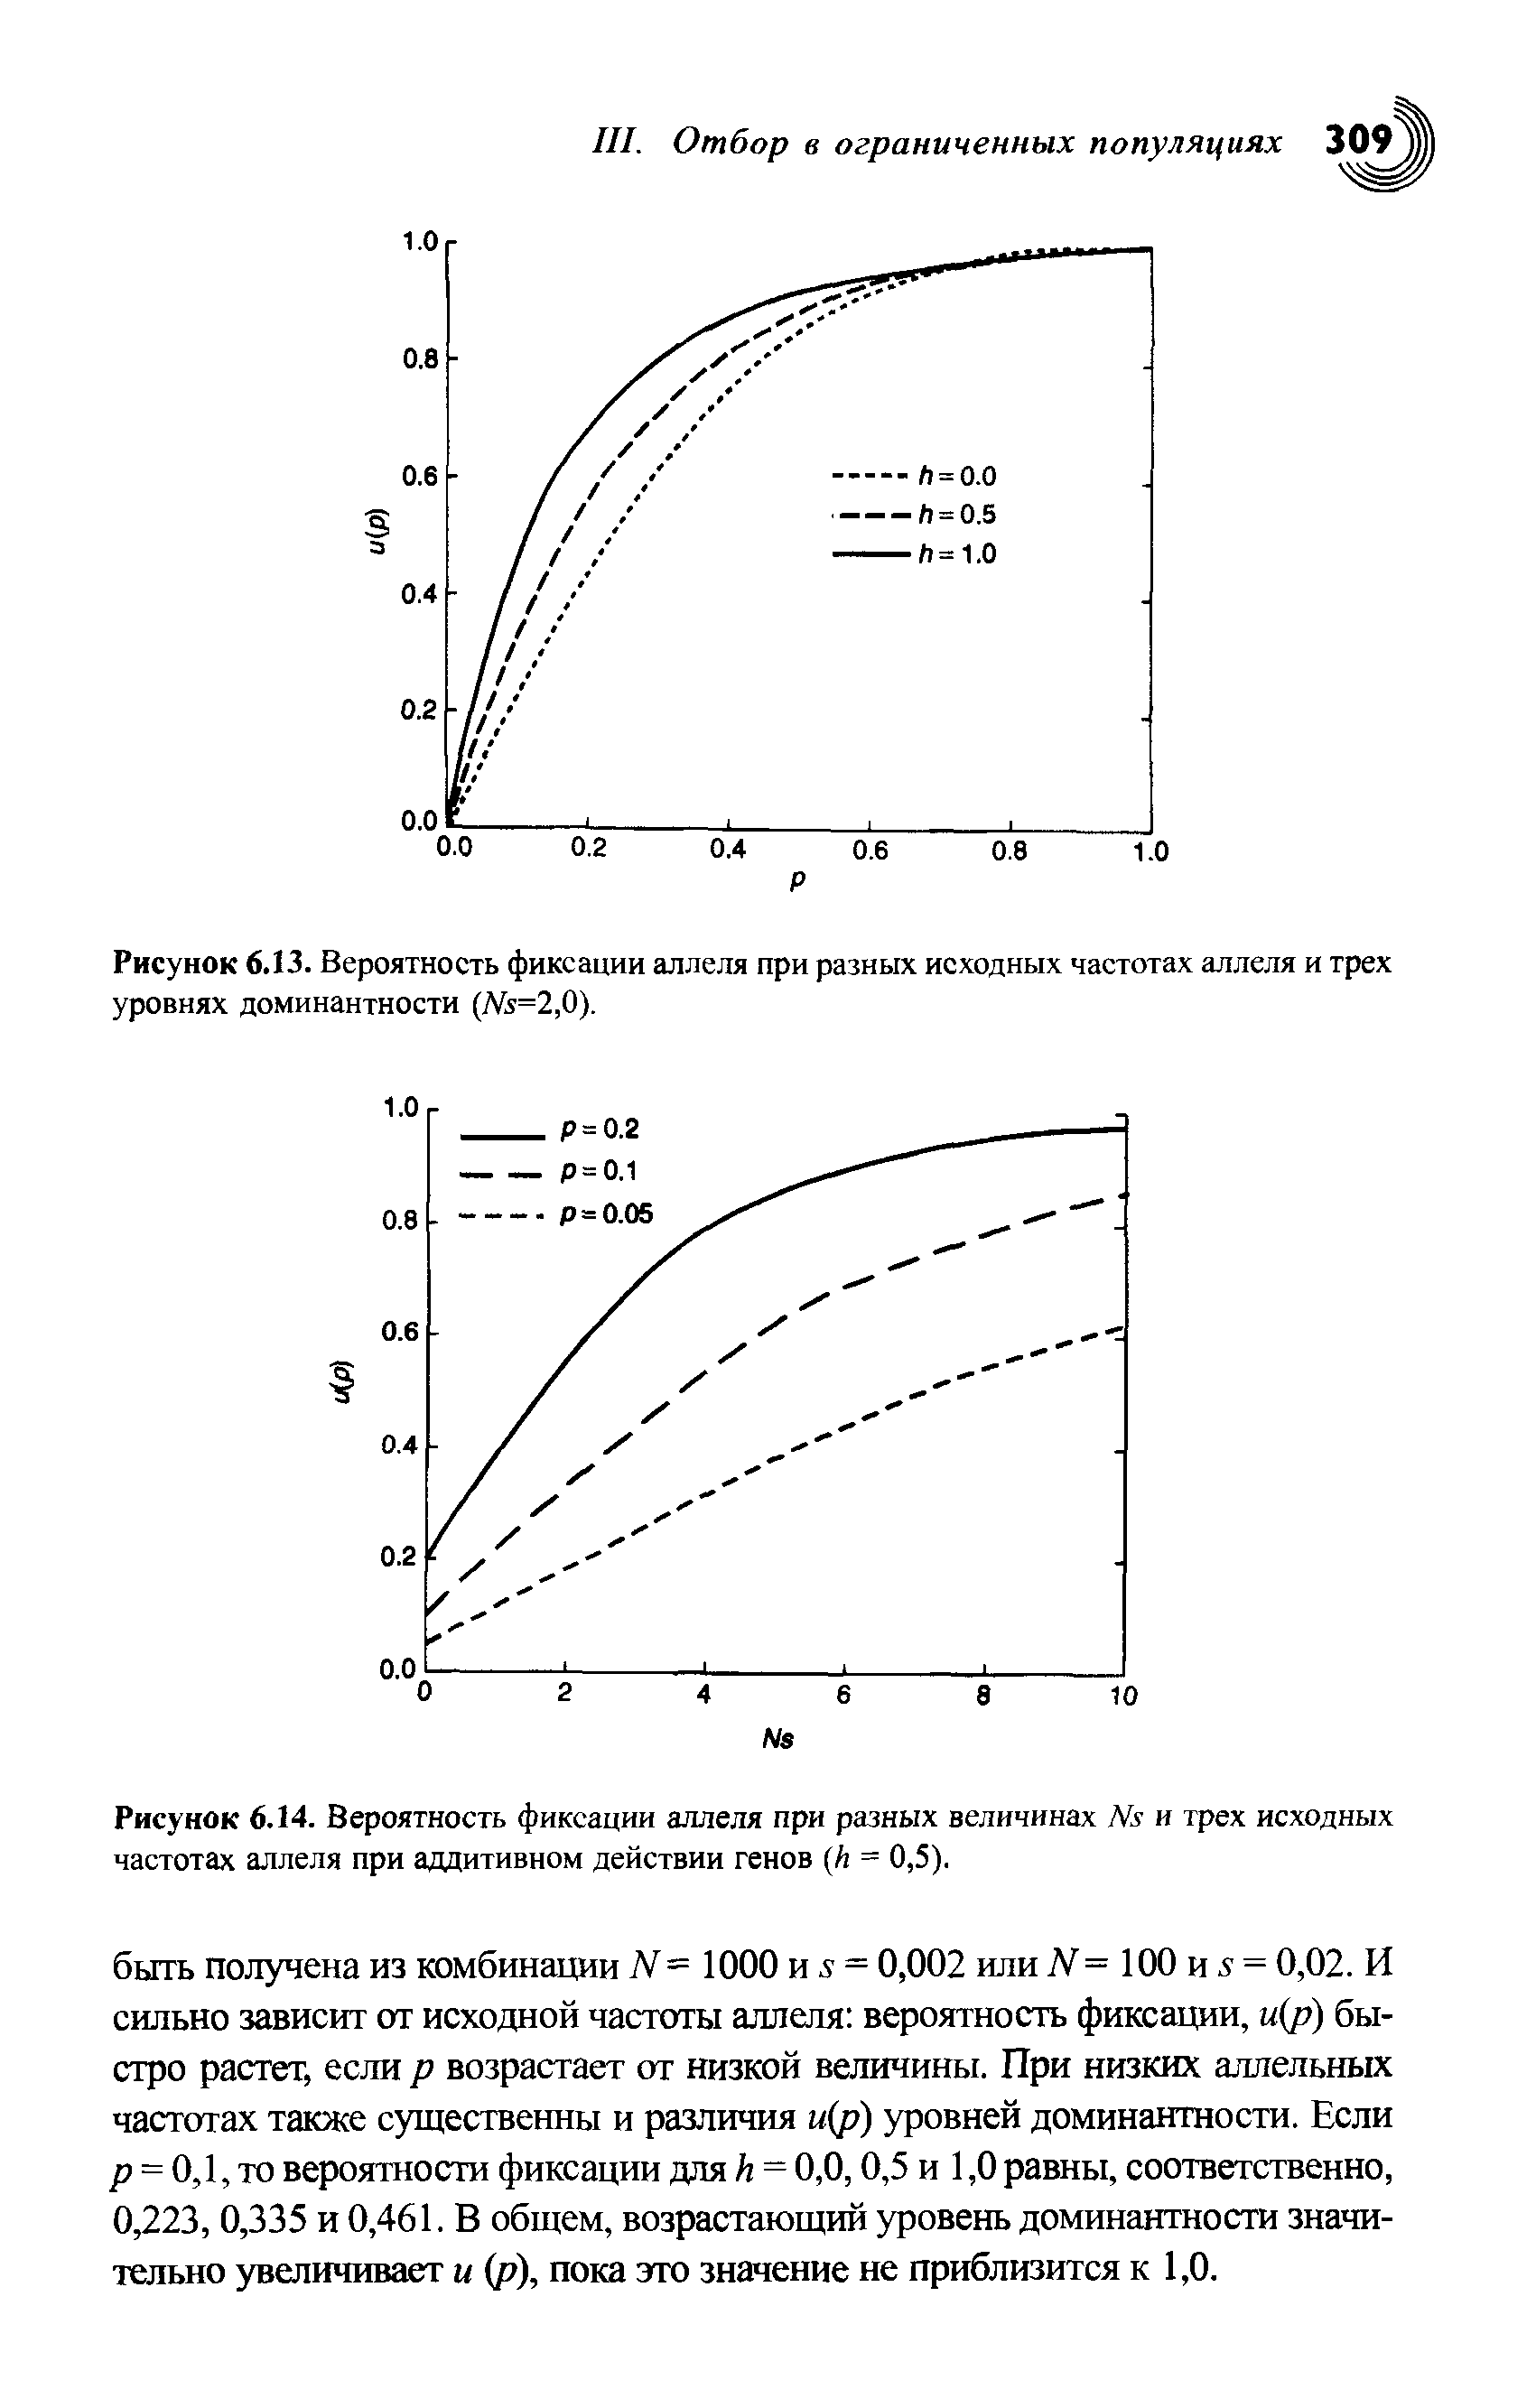 Рисунок 6.13. Вероятность фиксации аллеля при разных исходных частотах аллеля и трех уровнях доминантности (№=2,0).